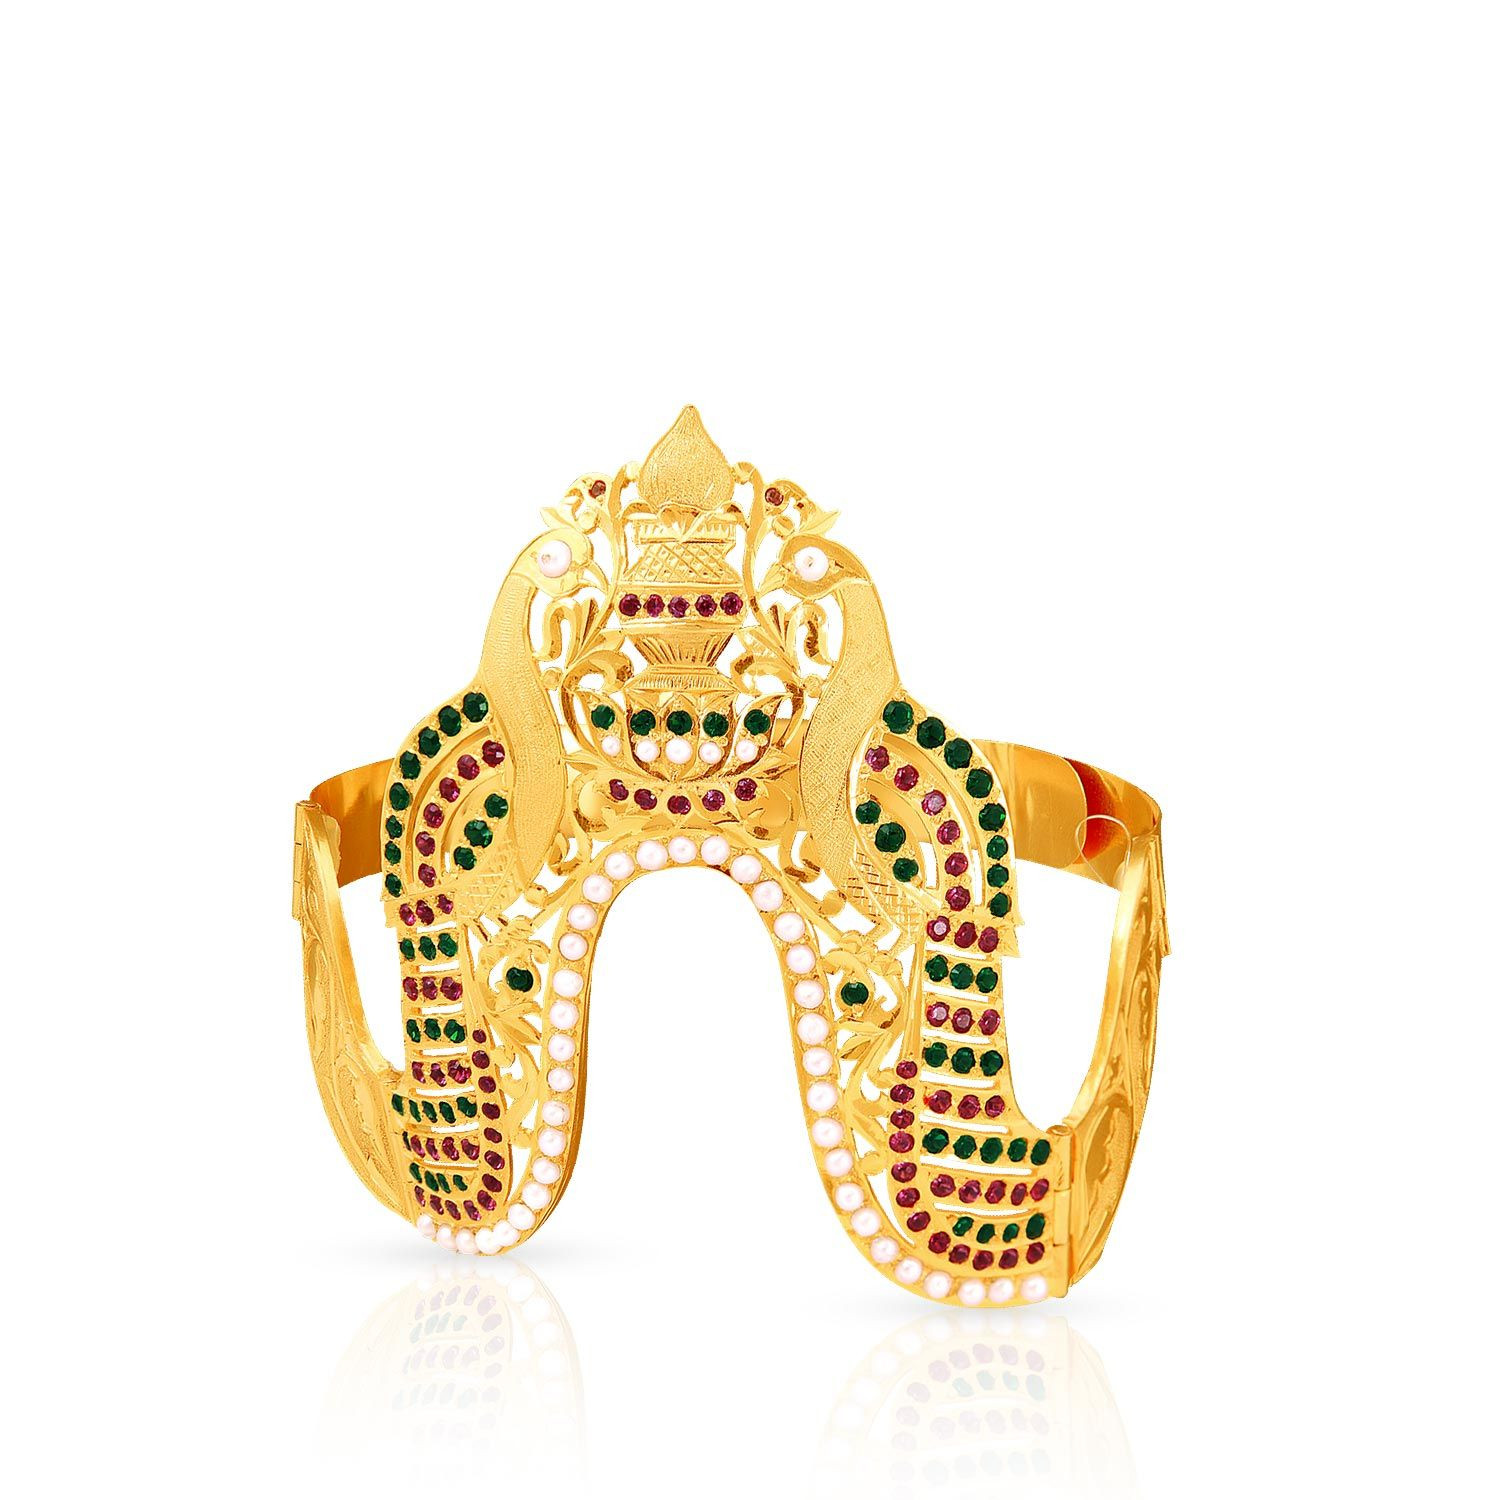 Buy 14 KARAT Gold Vadungila Bridal/Wedding Ring for Women (Yellow Gold, 10)  at Amazon.in